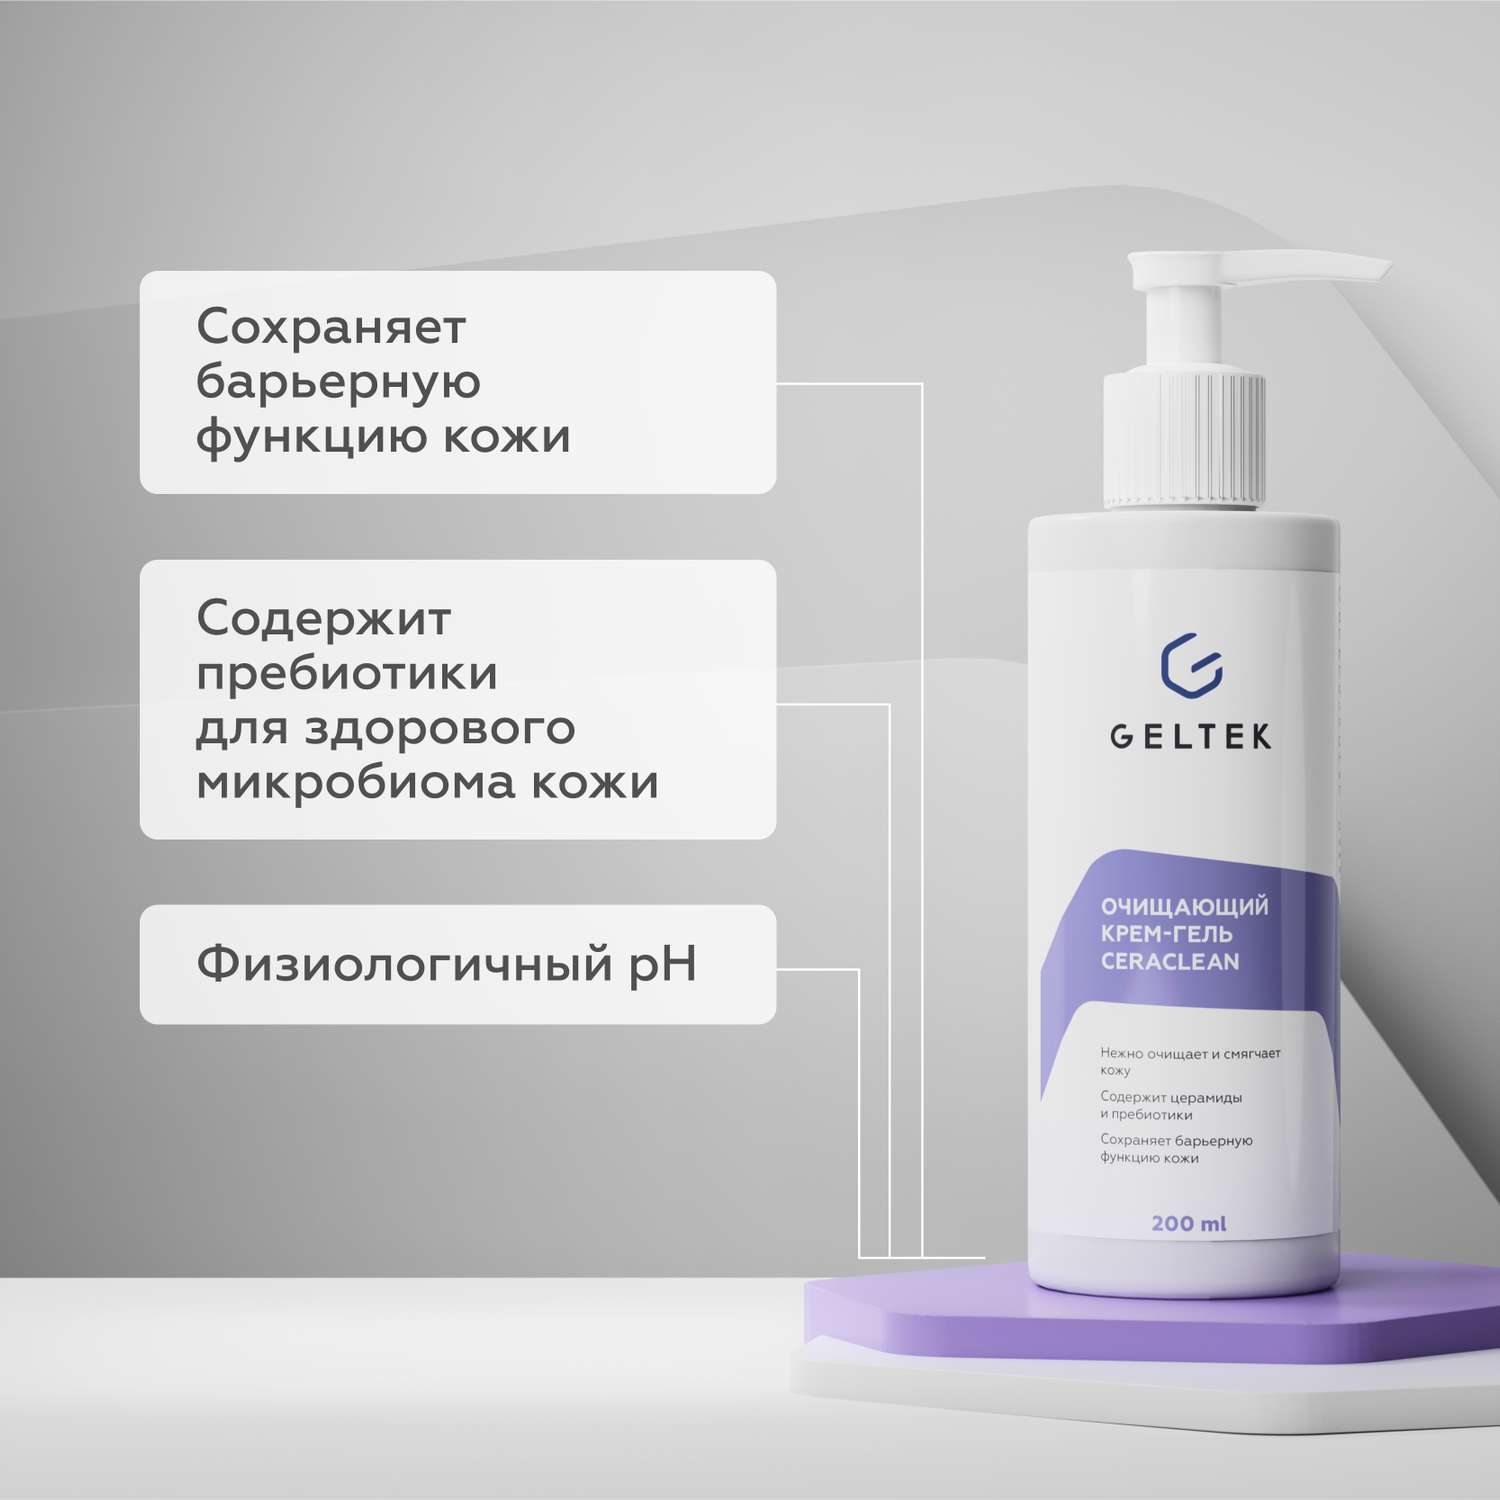 Очищающий крем-гель GELTEK для лица и снятия макияжа Ceraclean 200 мл - фото 2